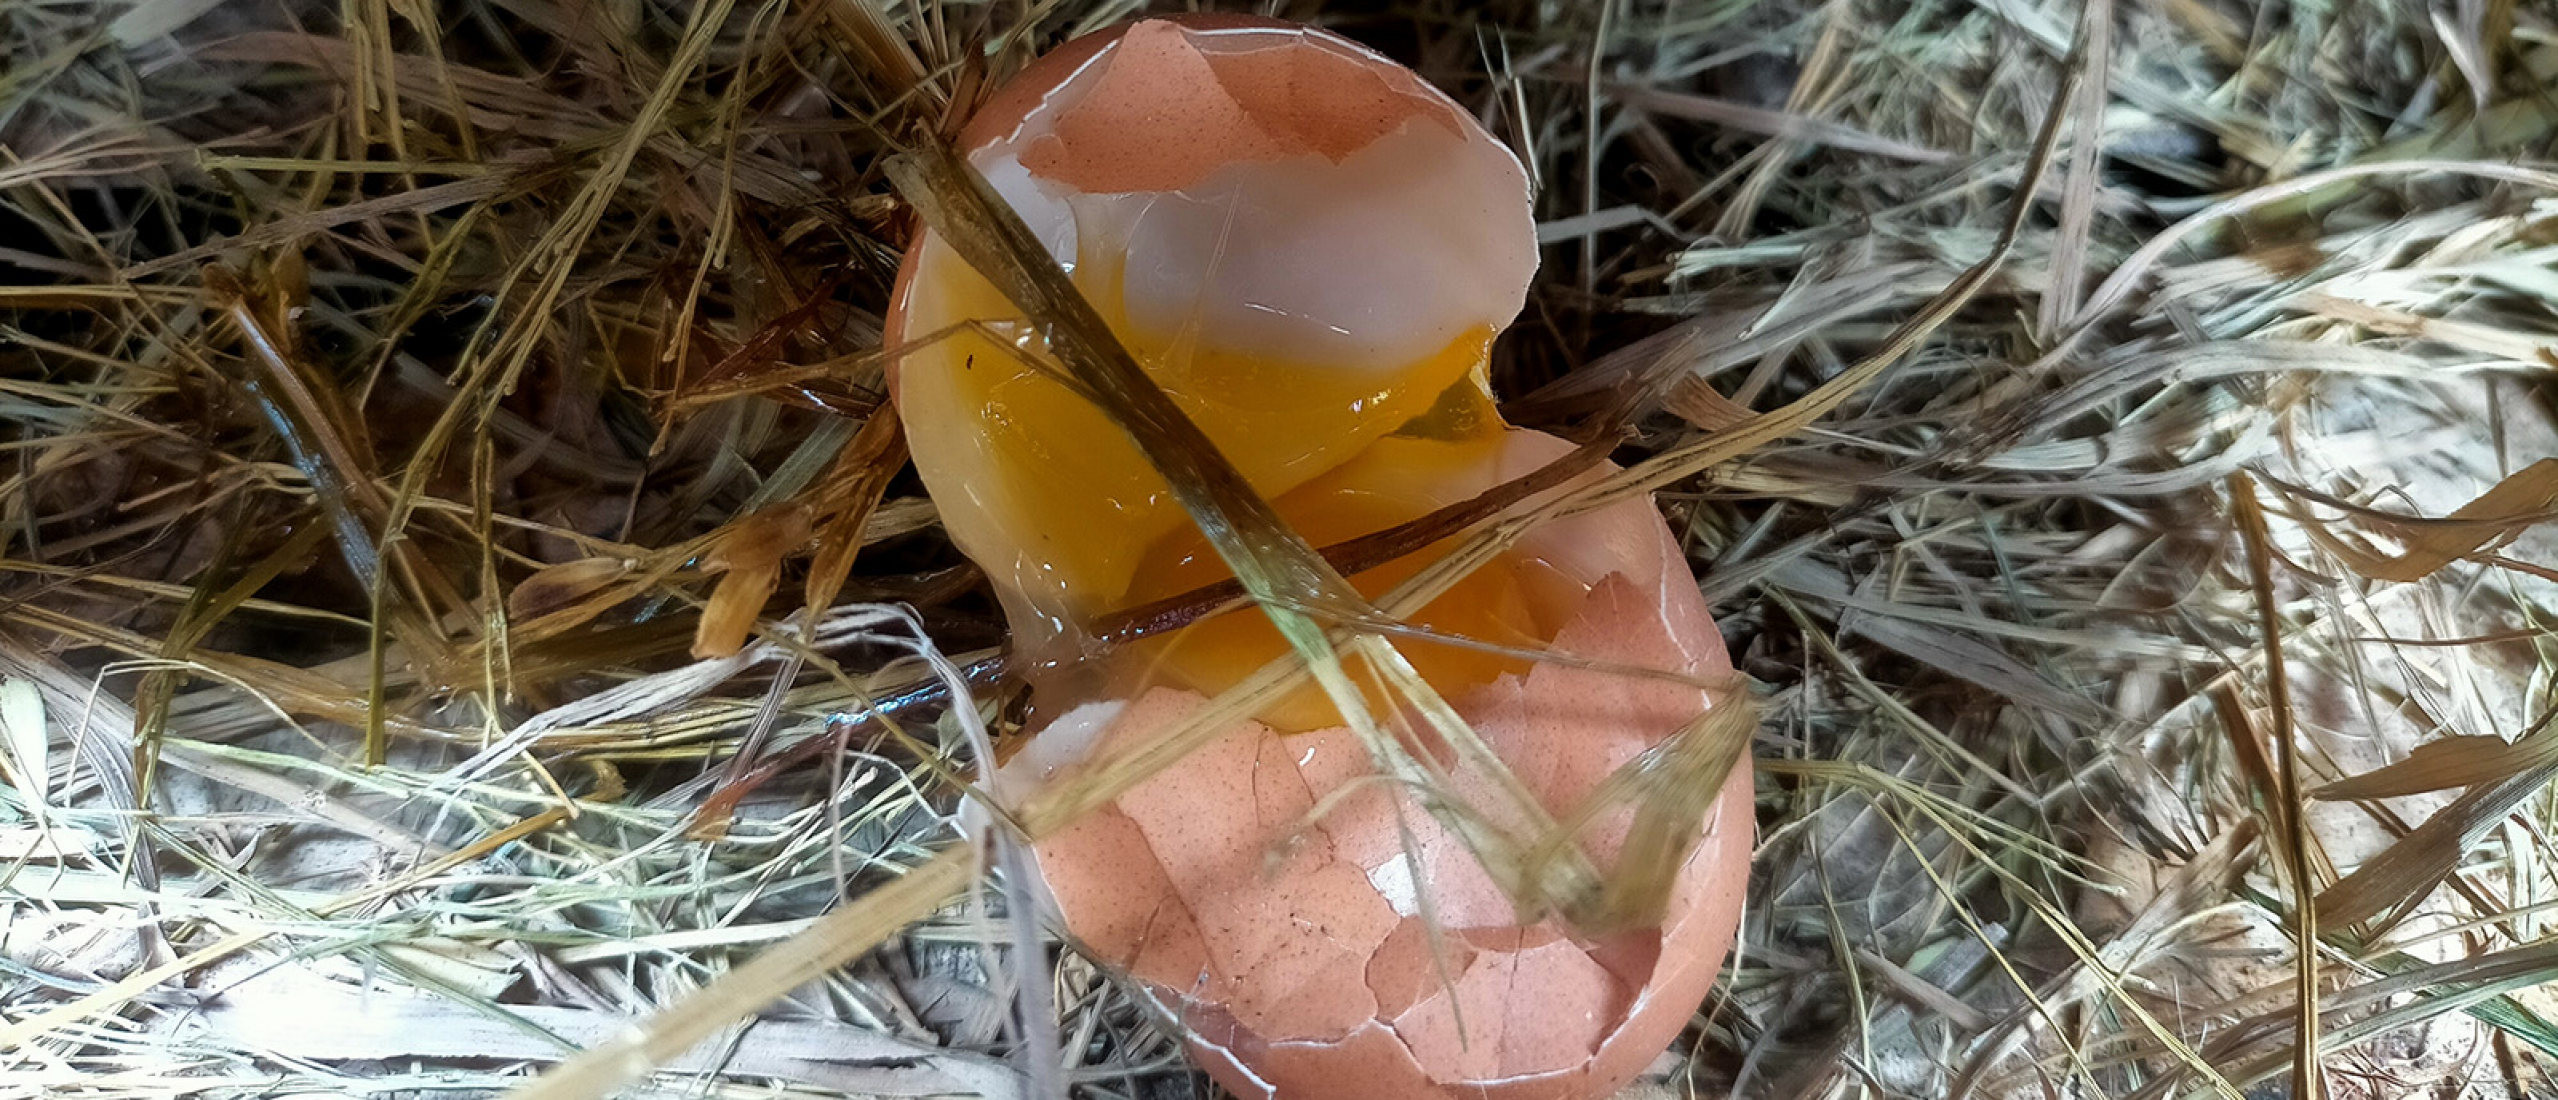 Hoe kan het dat mijn kip eieren legt met dunne schalen?